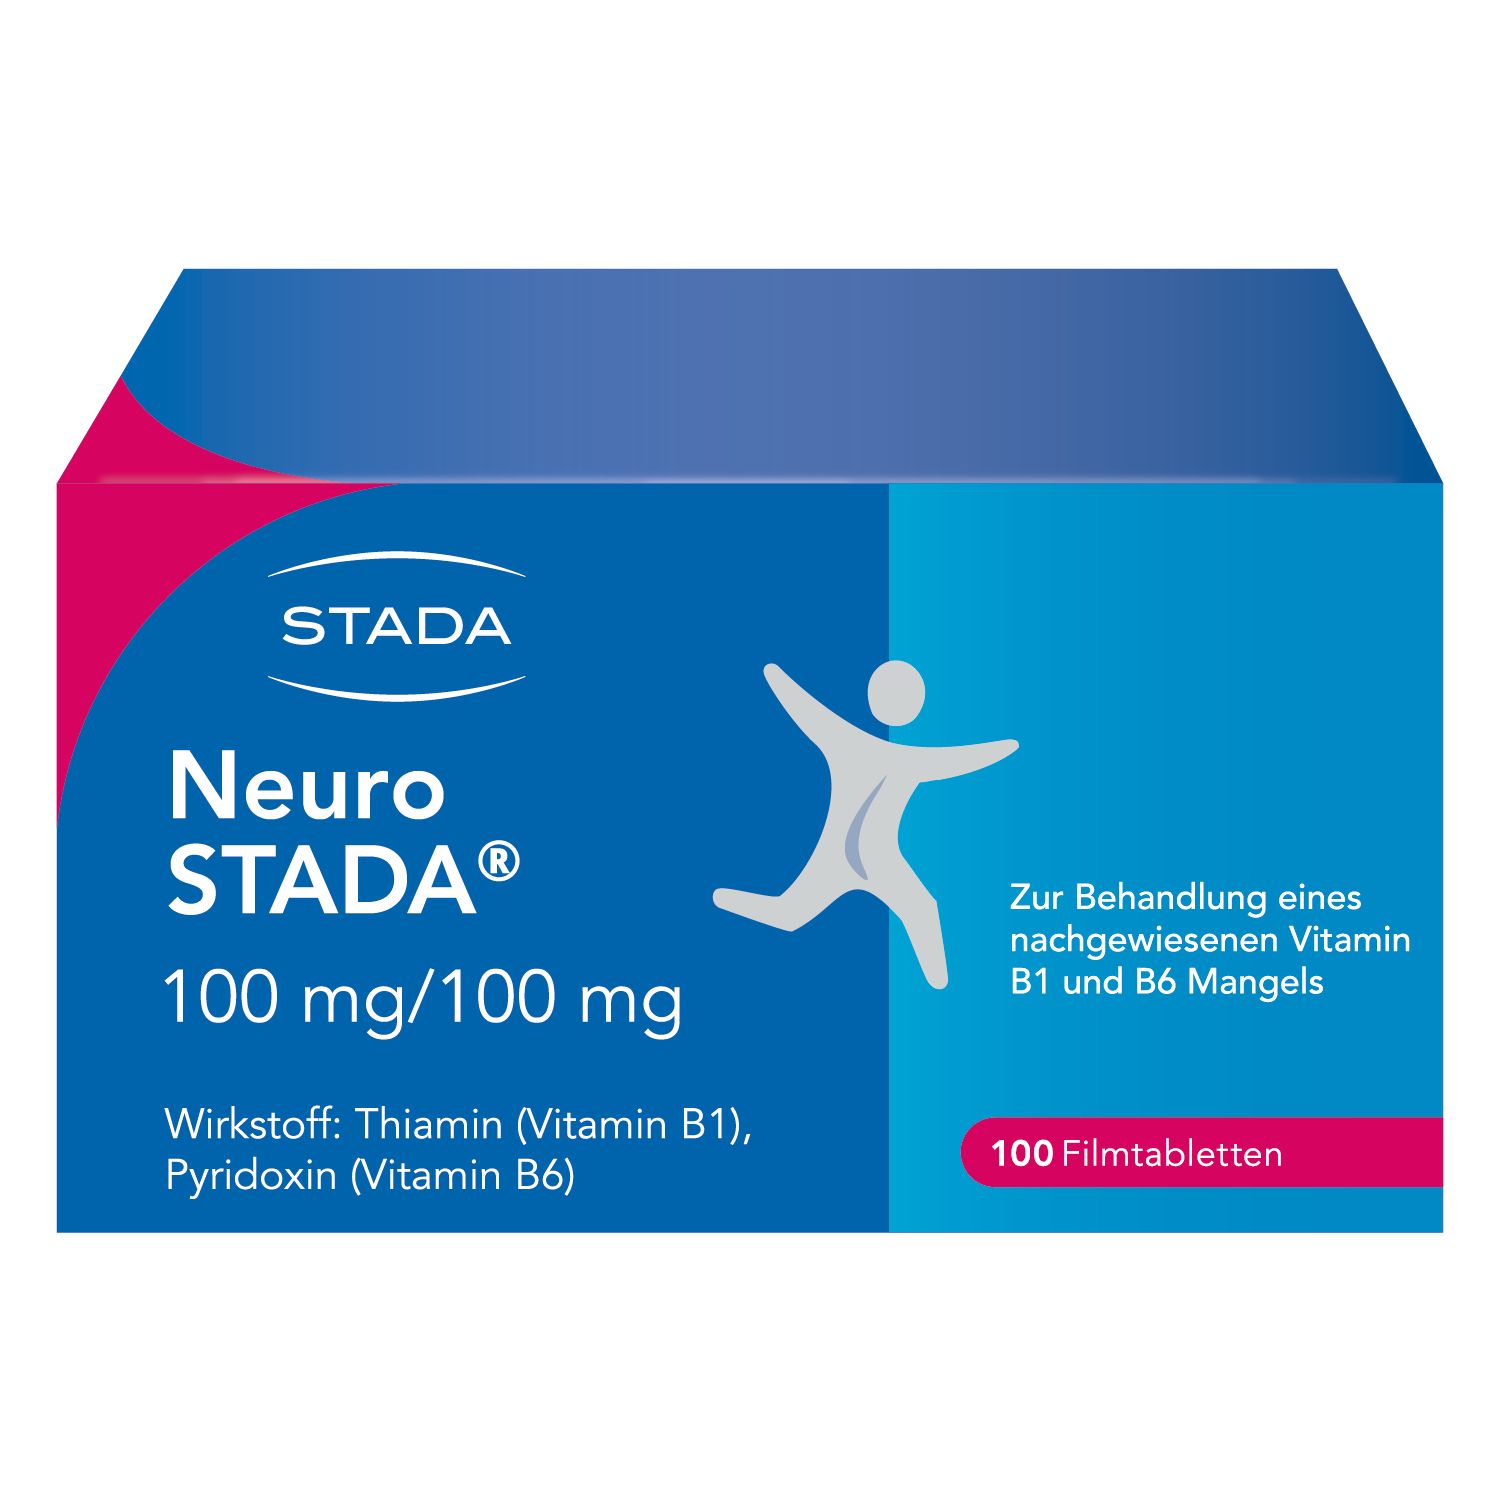 Neuro STADA® 100 mg/100 mg zur Behandlung eines nachgewiesenen Vitamin-B1 und -B6-Mangels